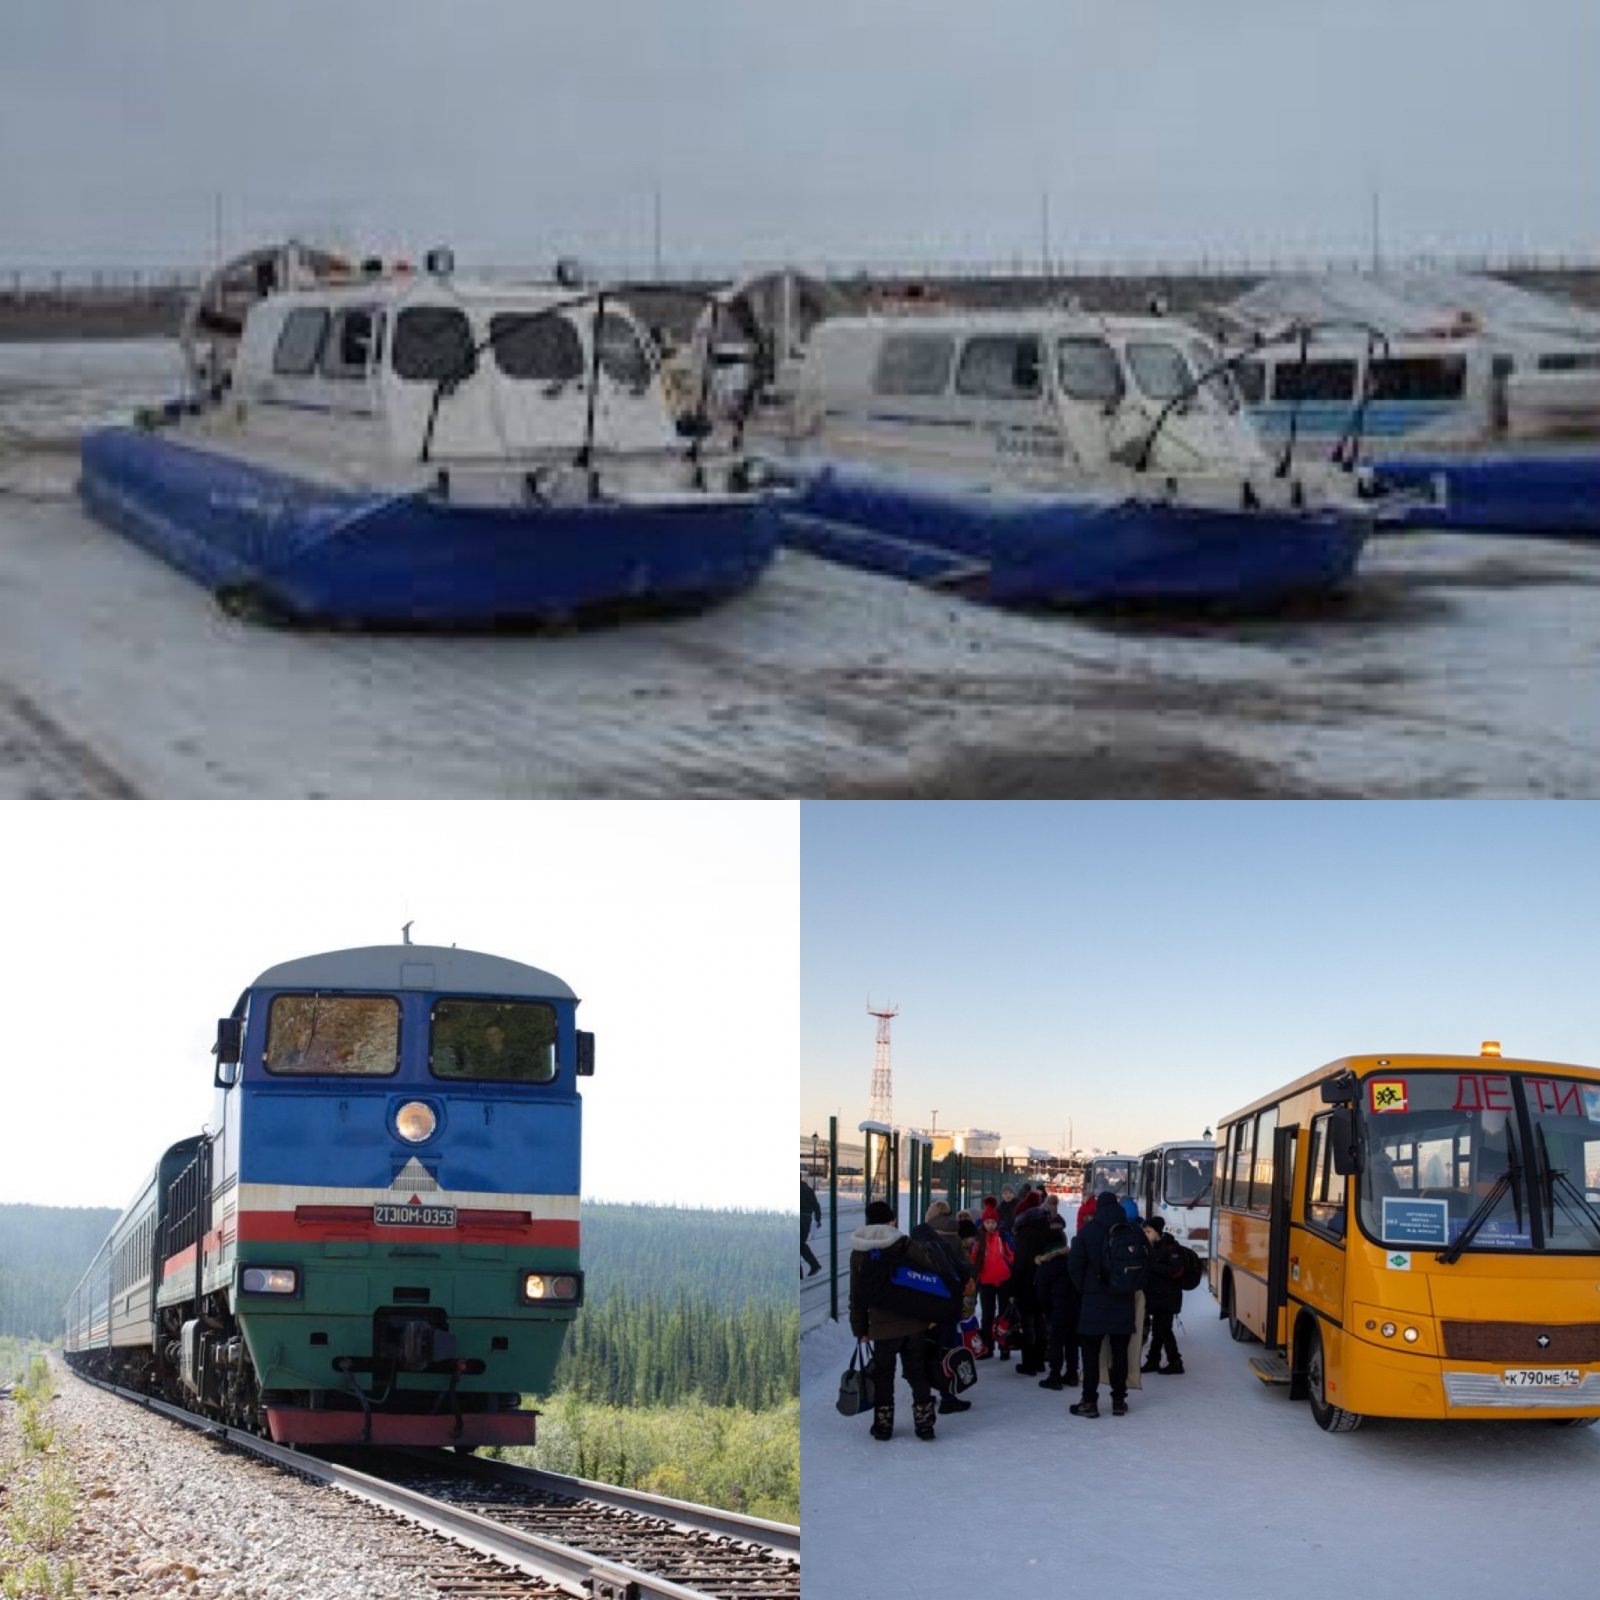 Трансфер пассажиров поезда через реку Лена до 8 декабря включительно будет выполняться судами на воздушной подушке